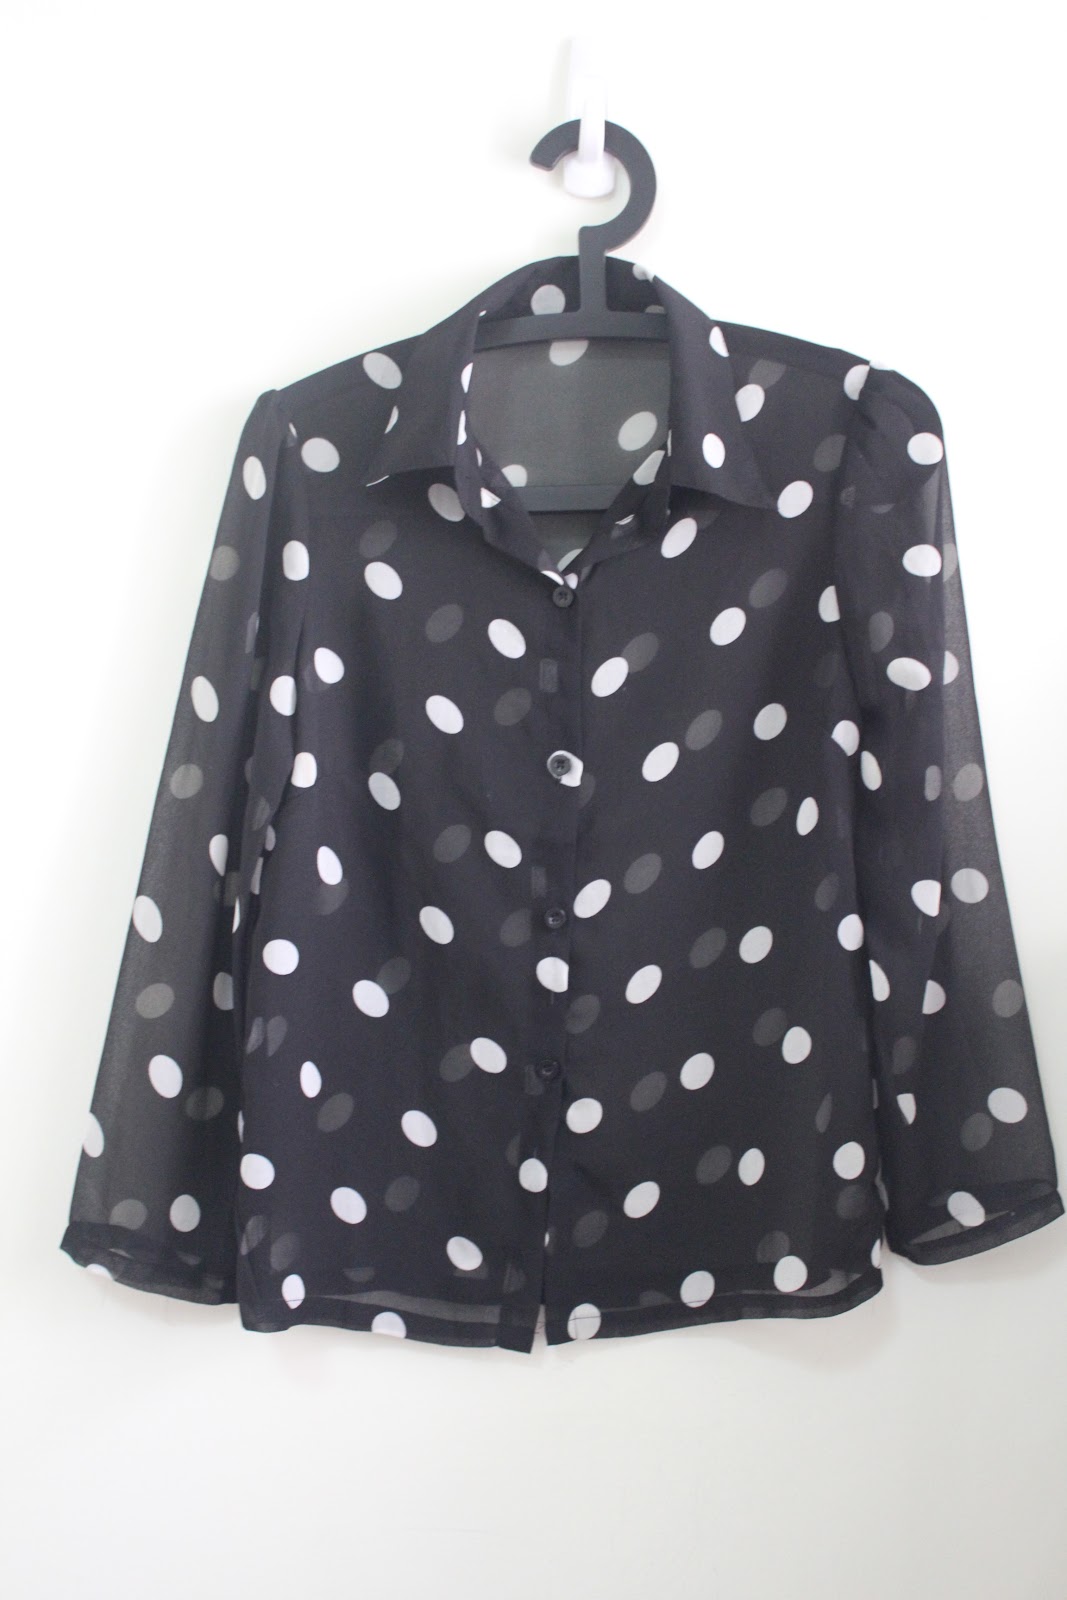 shop/harmfulacids: Vintage polka dot chiffon blouse